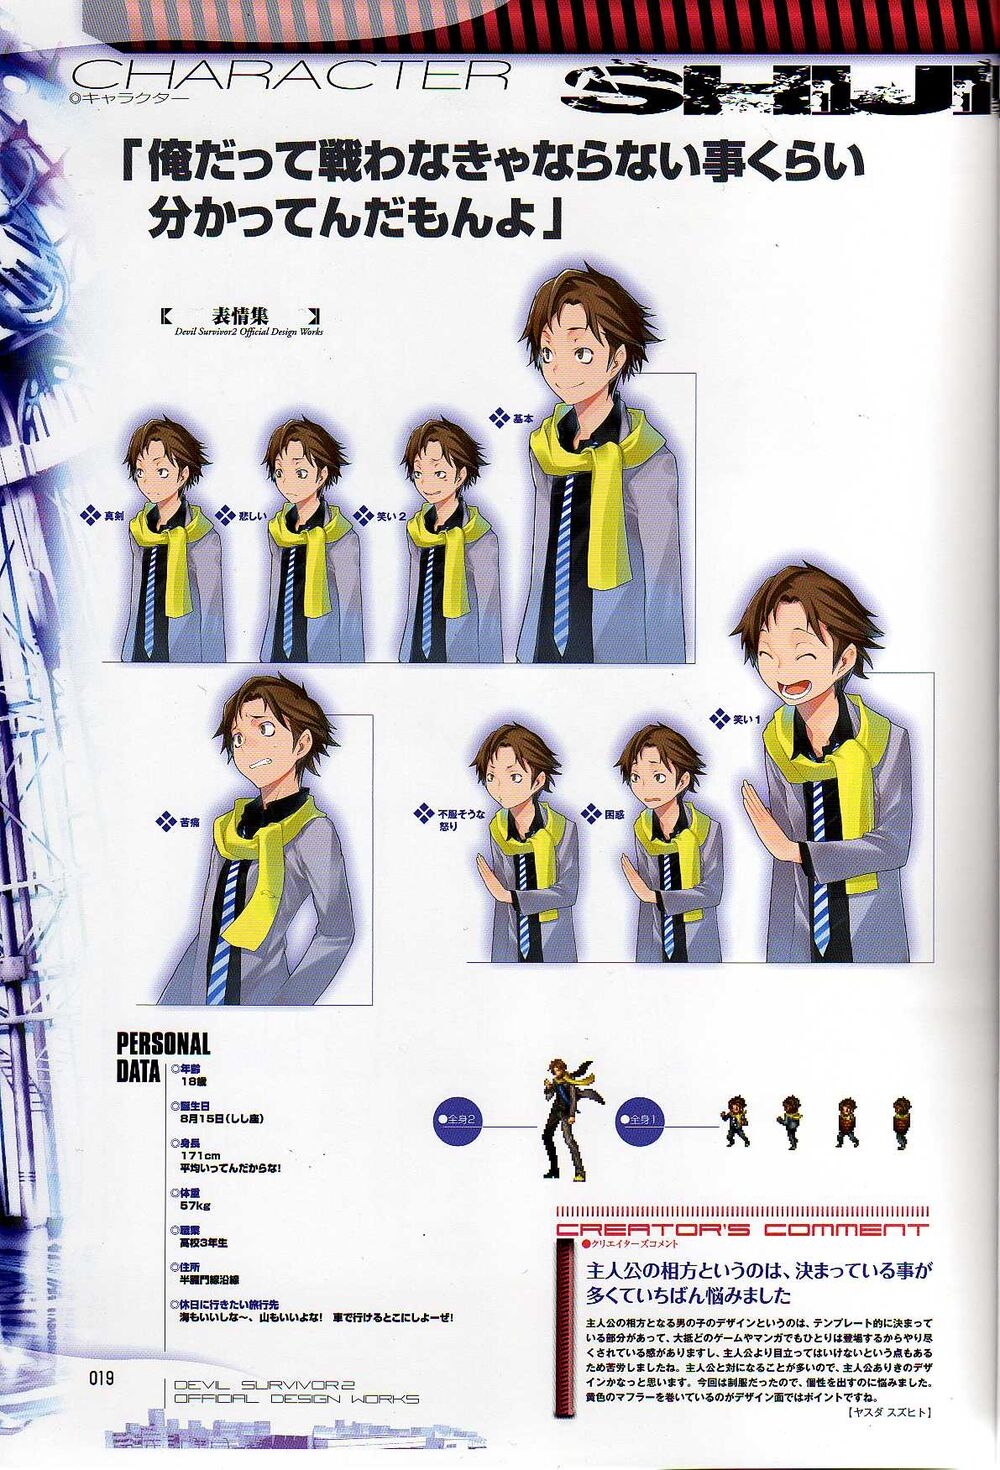 Shin Megami Tensei Characters 51